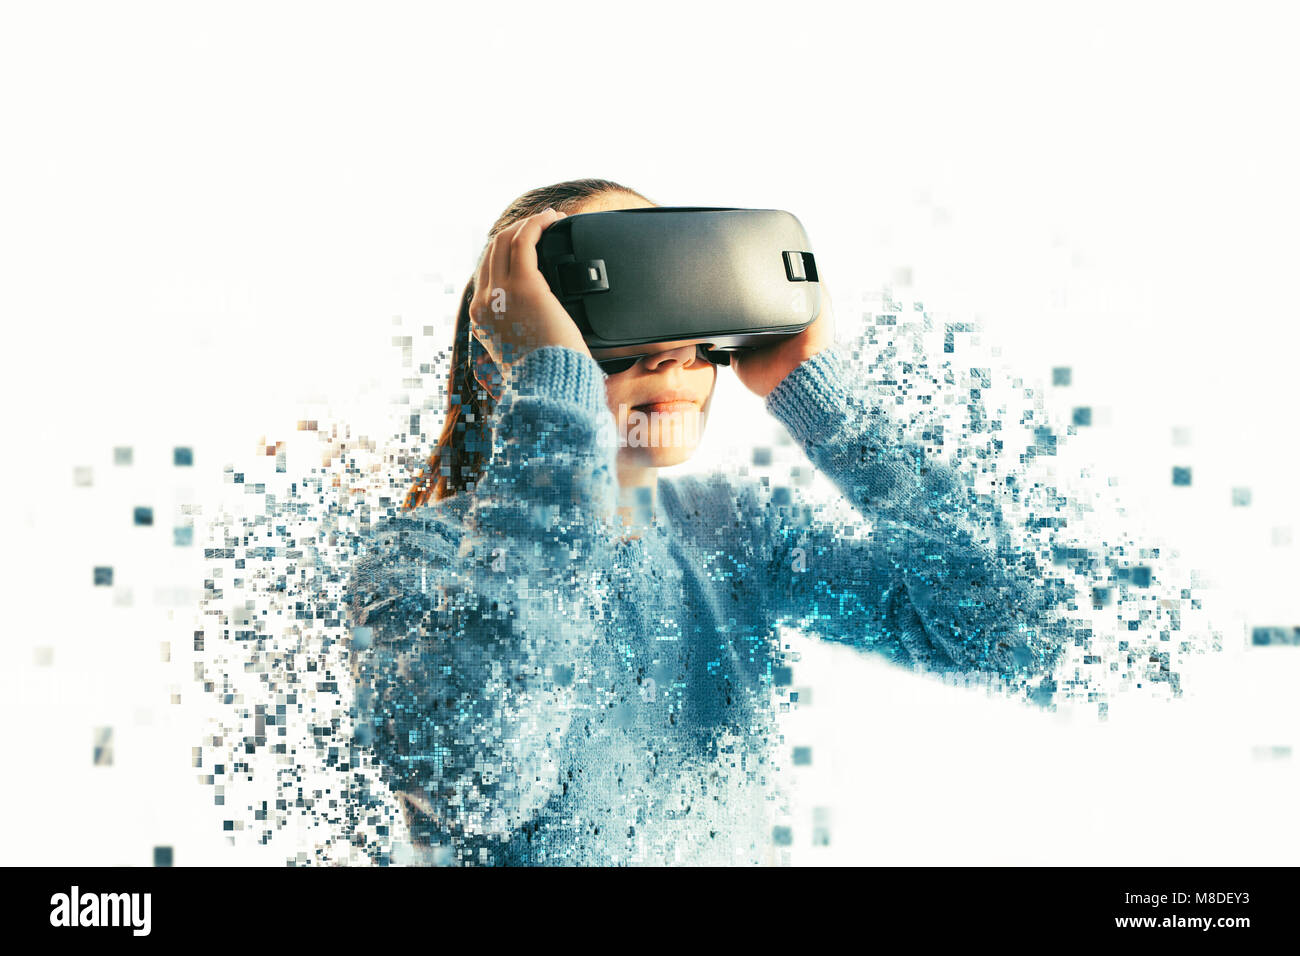 Eine Person in virtuellen Gläser fliegt in Pixel. Die Frau mit der Brille der Virtuellen Realität. Zukunft Technik Konzept. Moderne bildgebende Technik. Durch Pixel zersplittert. Stockfoto